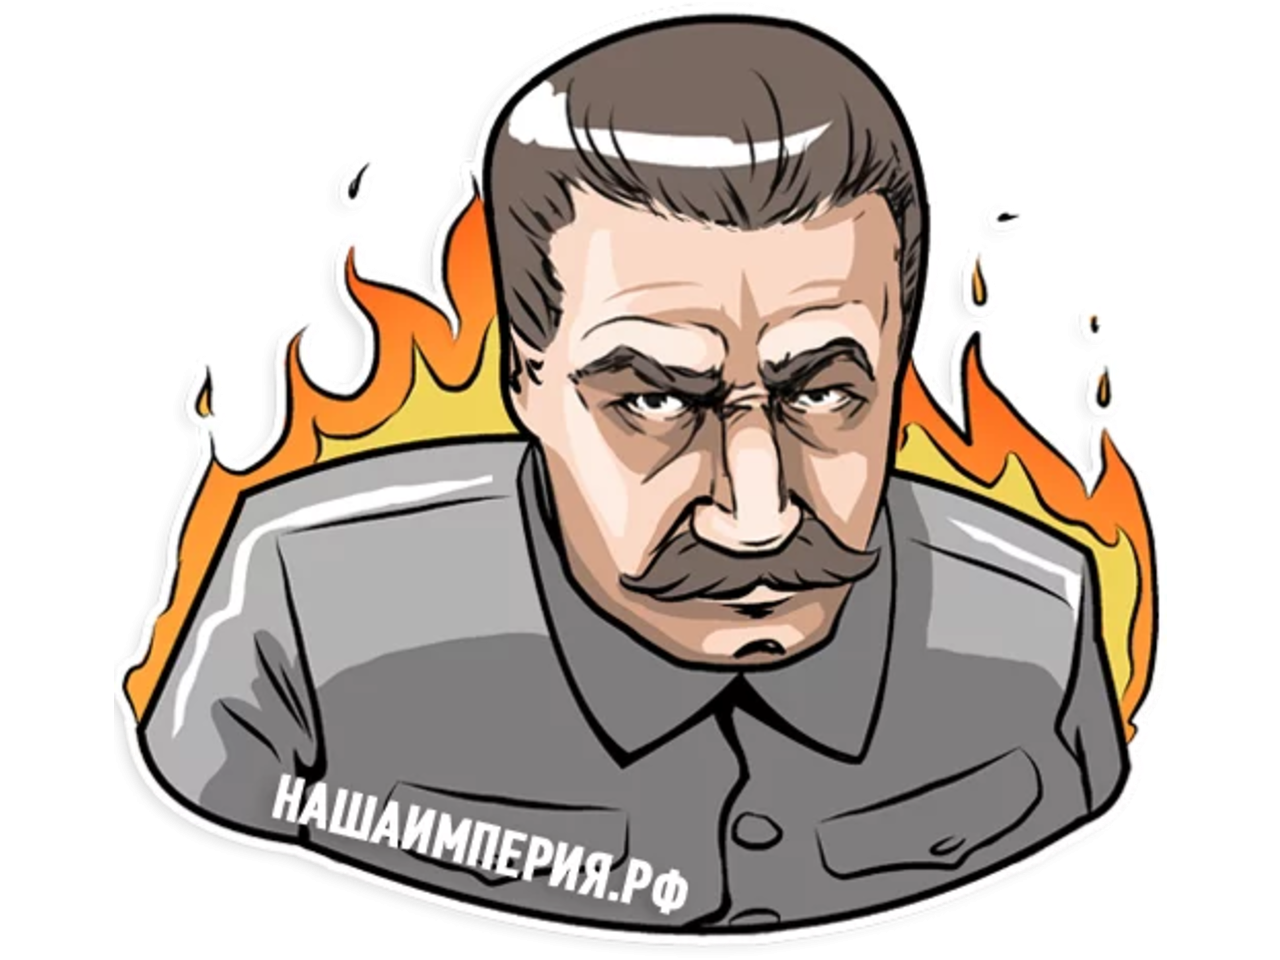 Сталин стикер телеграмм (119) фото